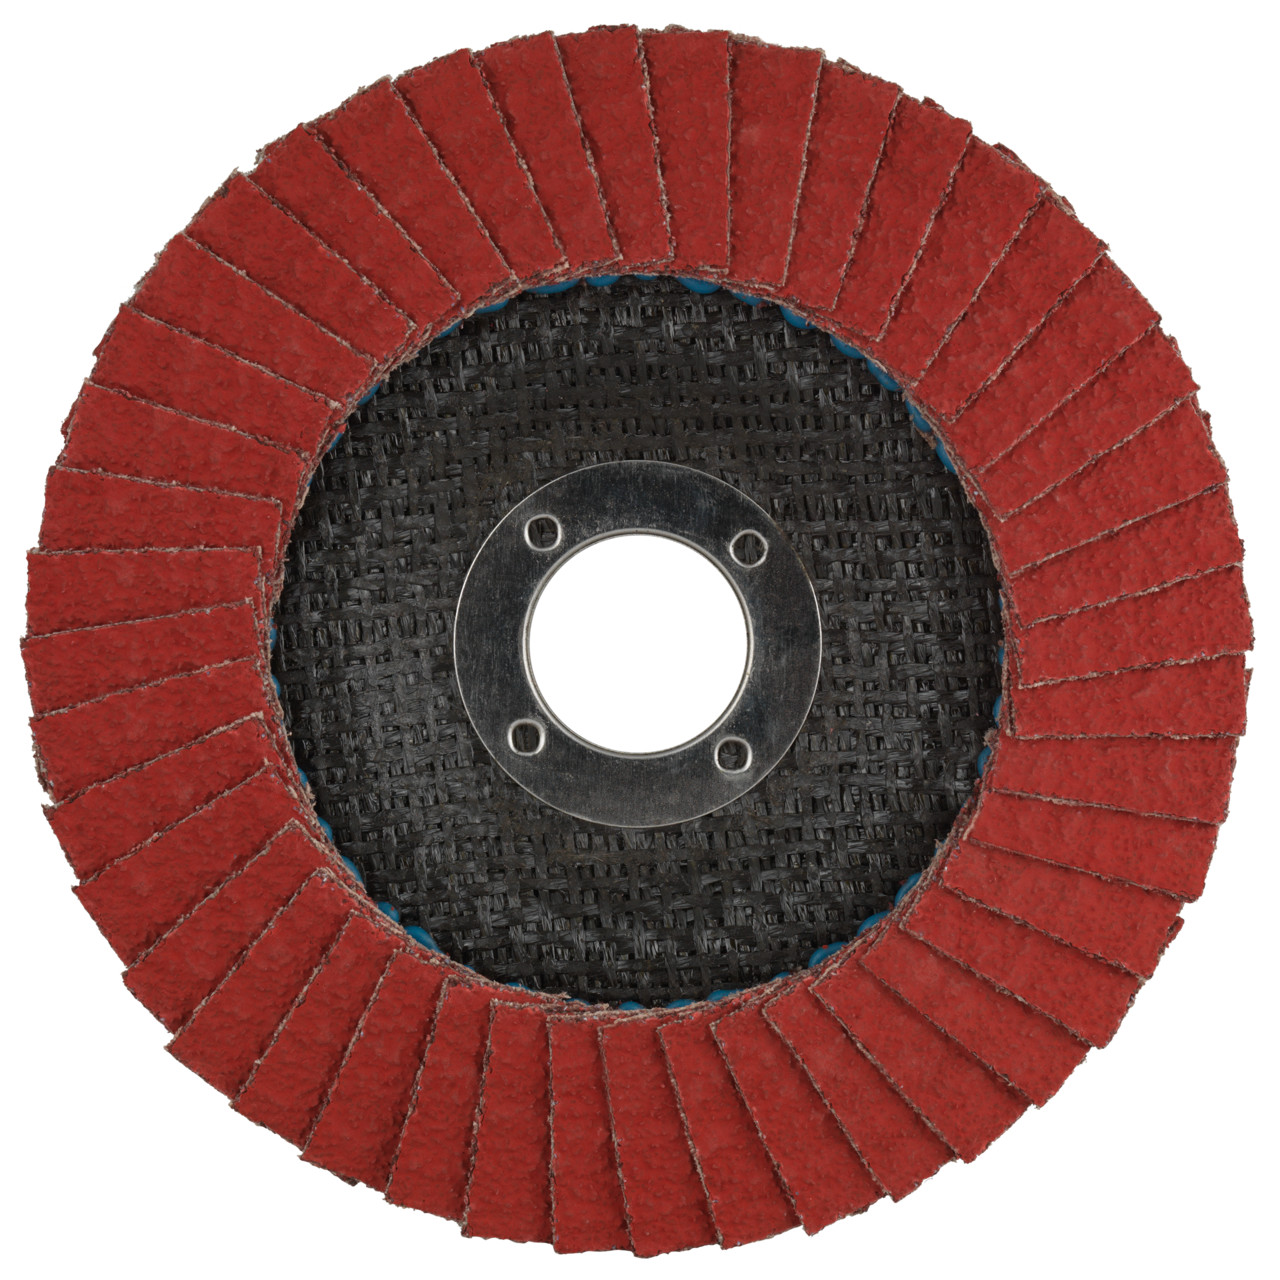 Tyrolit Getande borgring DxH 115x22,2 CERAMIC voor roestvrij staal, P40, vorm: 27A - slingerontwerp (glasvezeldragerhuisontwerp), Art. 645130